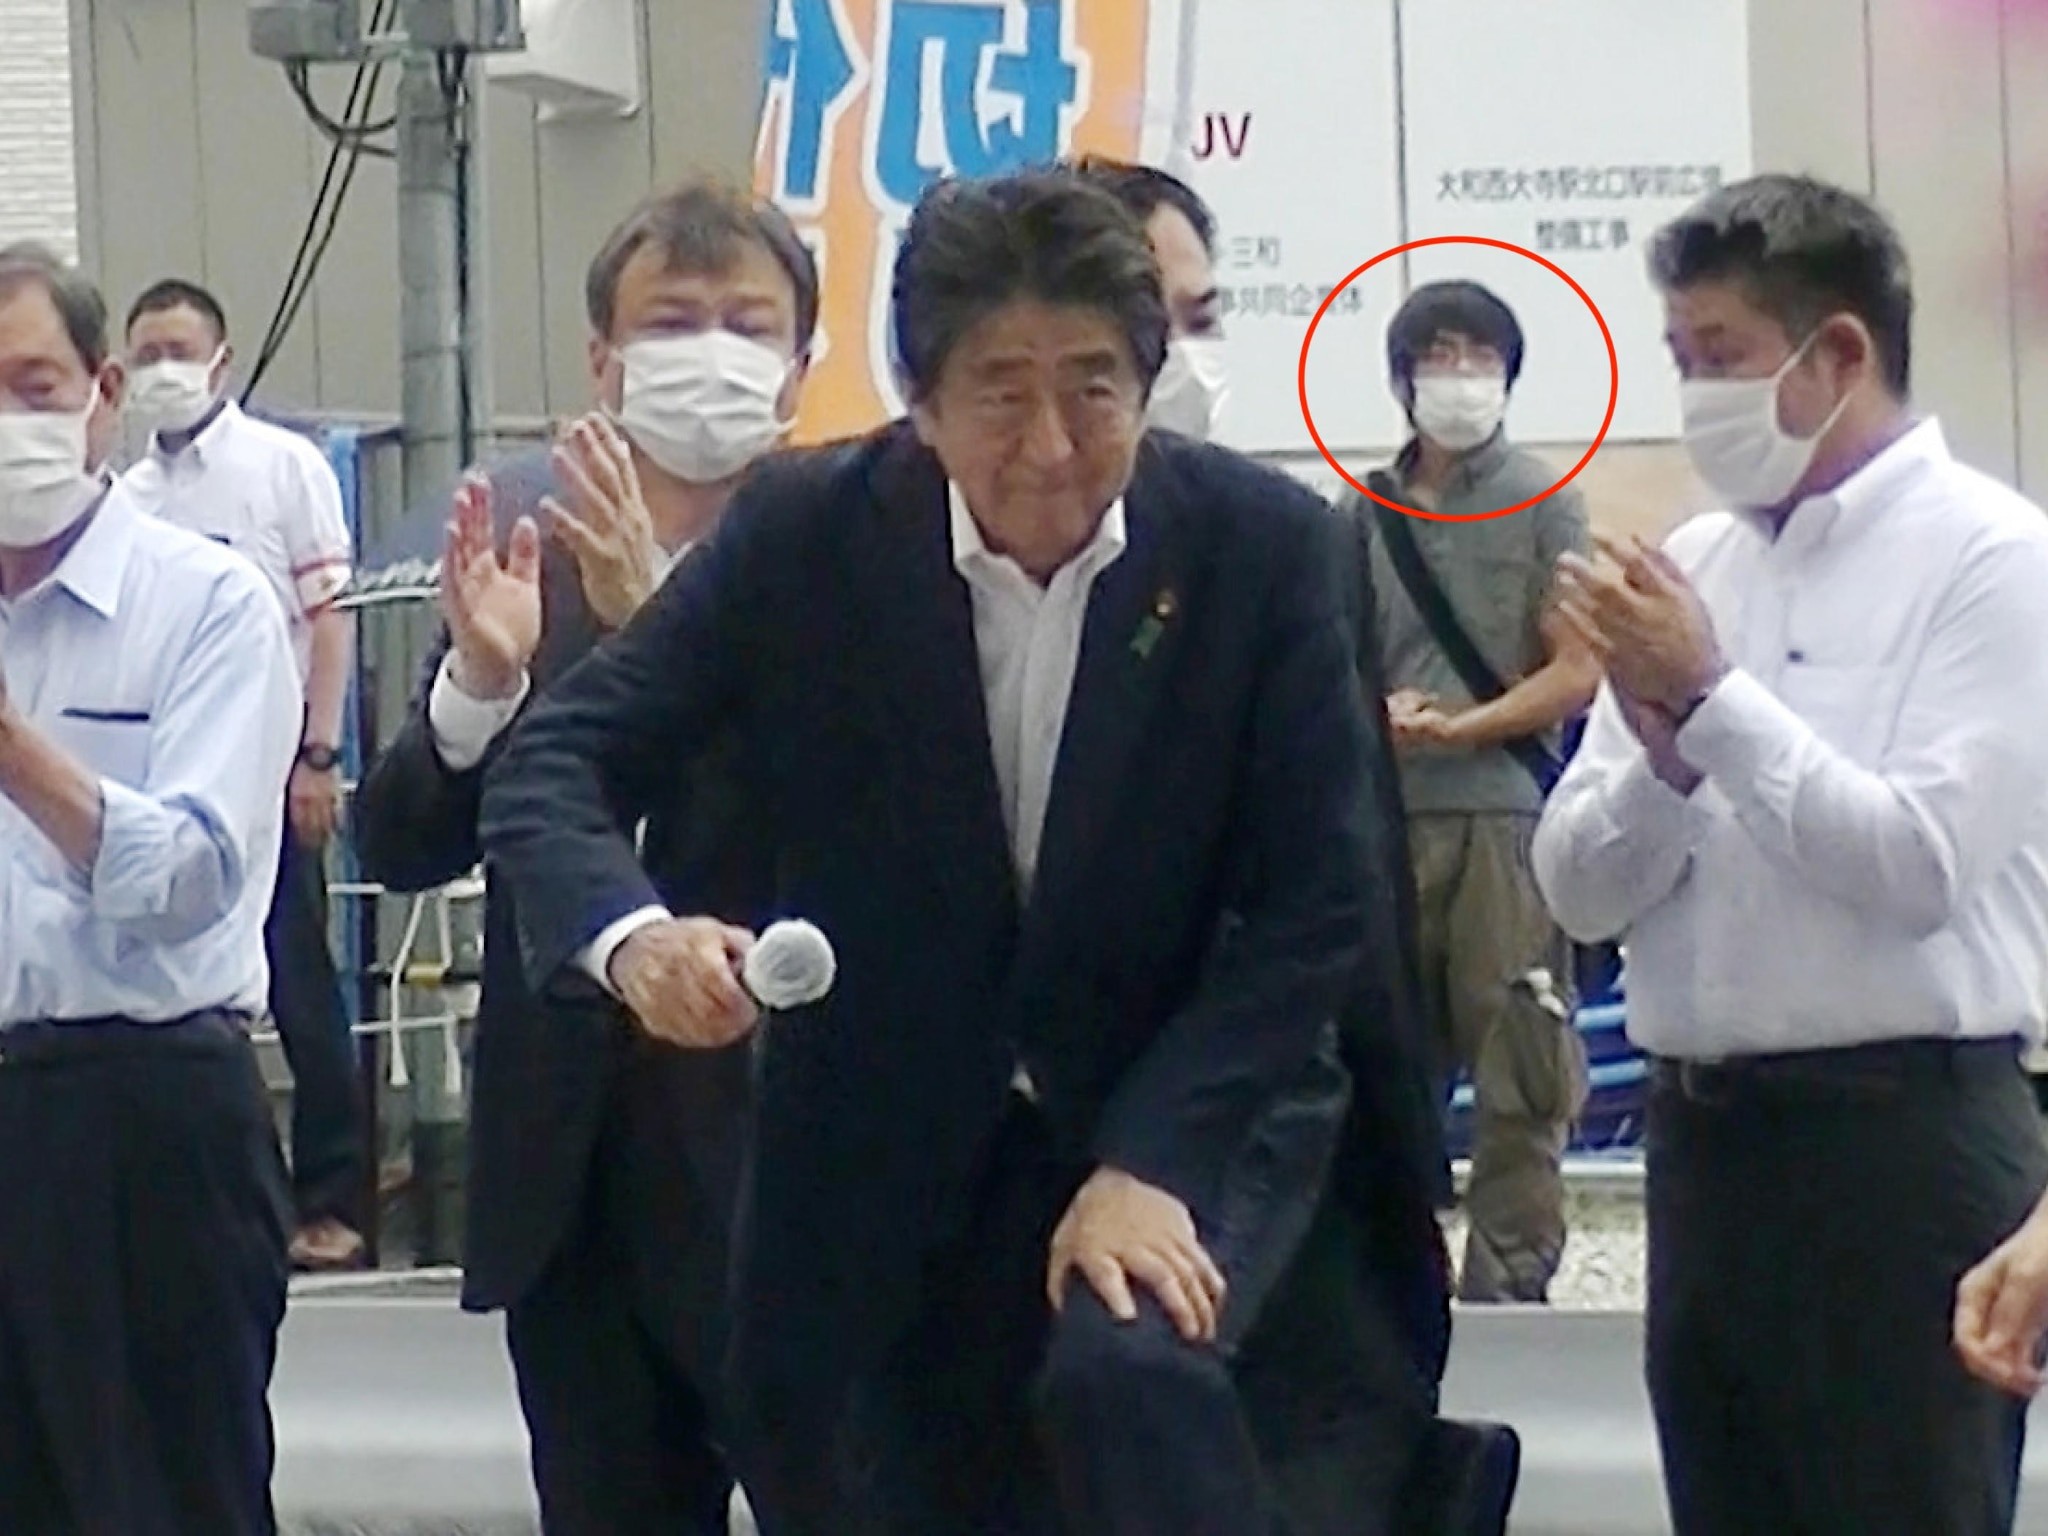 9 Luglio 2022 – Shinzo Abe non era l’obiettivo iniziale del killer dell’ex premier giapponese. Si moltiplicano gli aspiranti successori di Johnson. 27° anniversario Srebrenica, alla vigilia esposte foto serbi massacrati in Bosnia